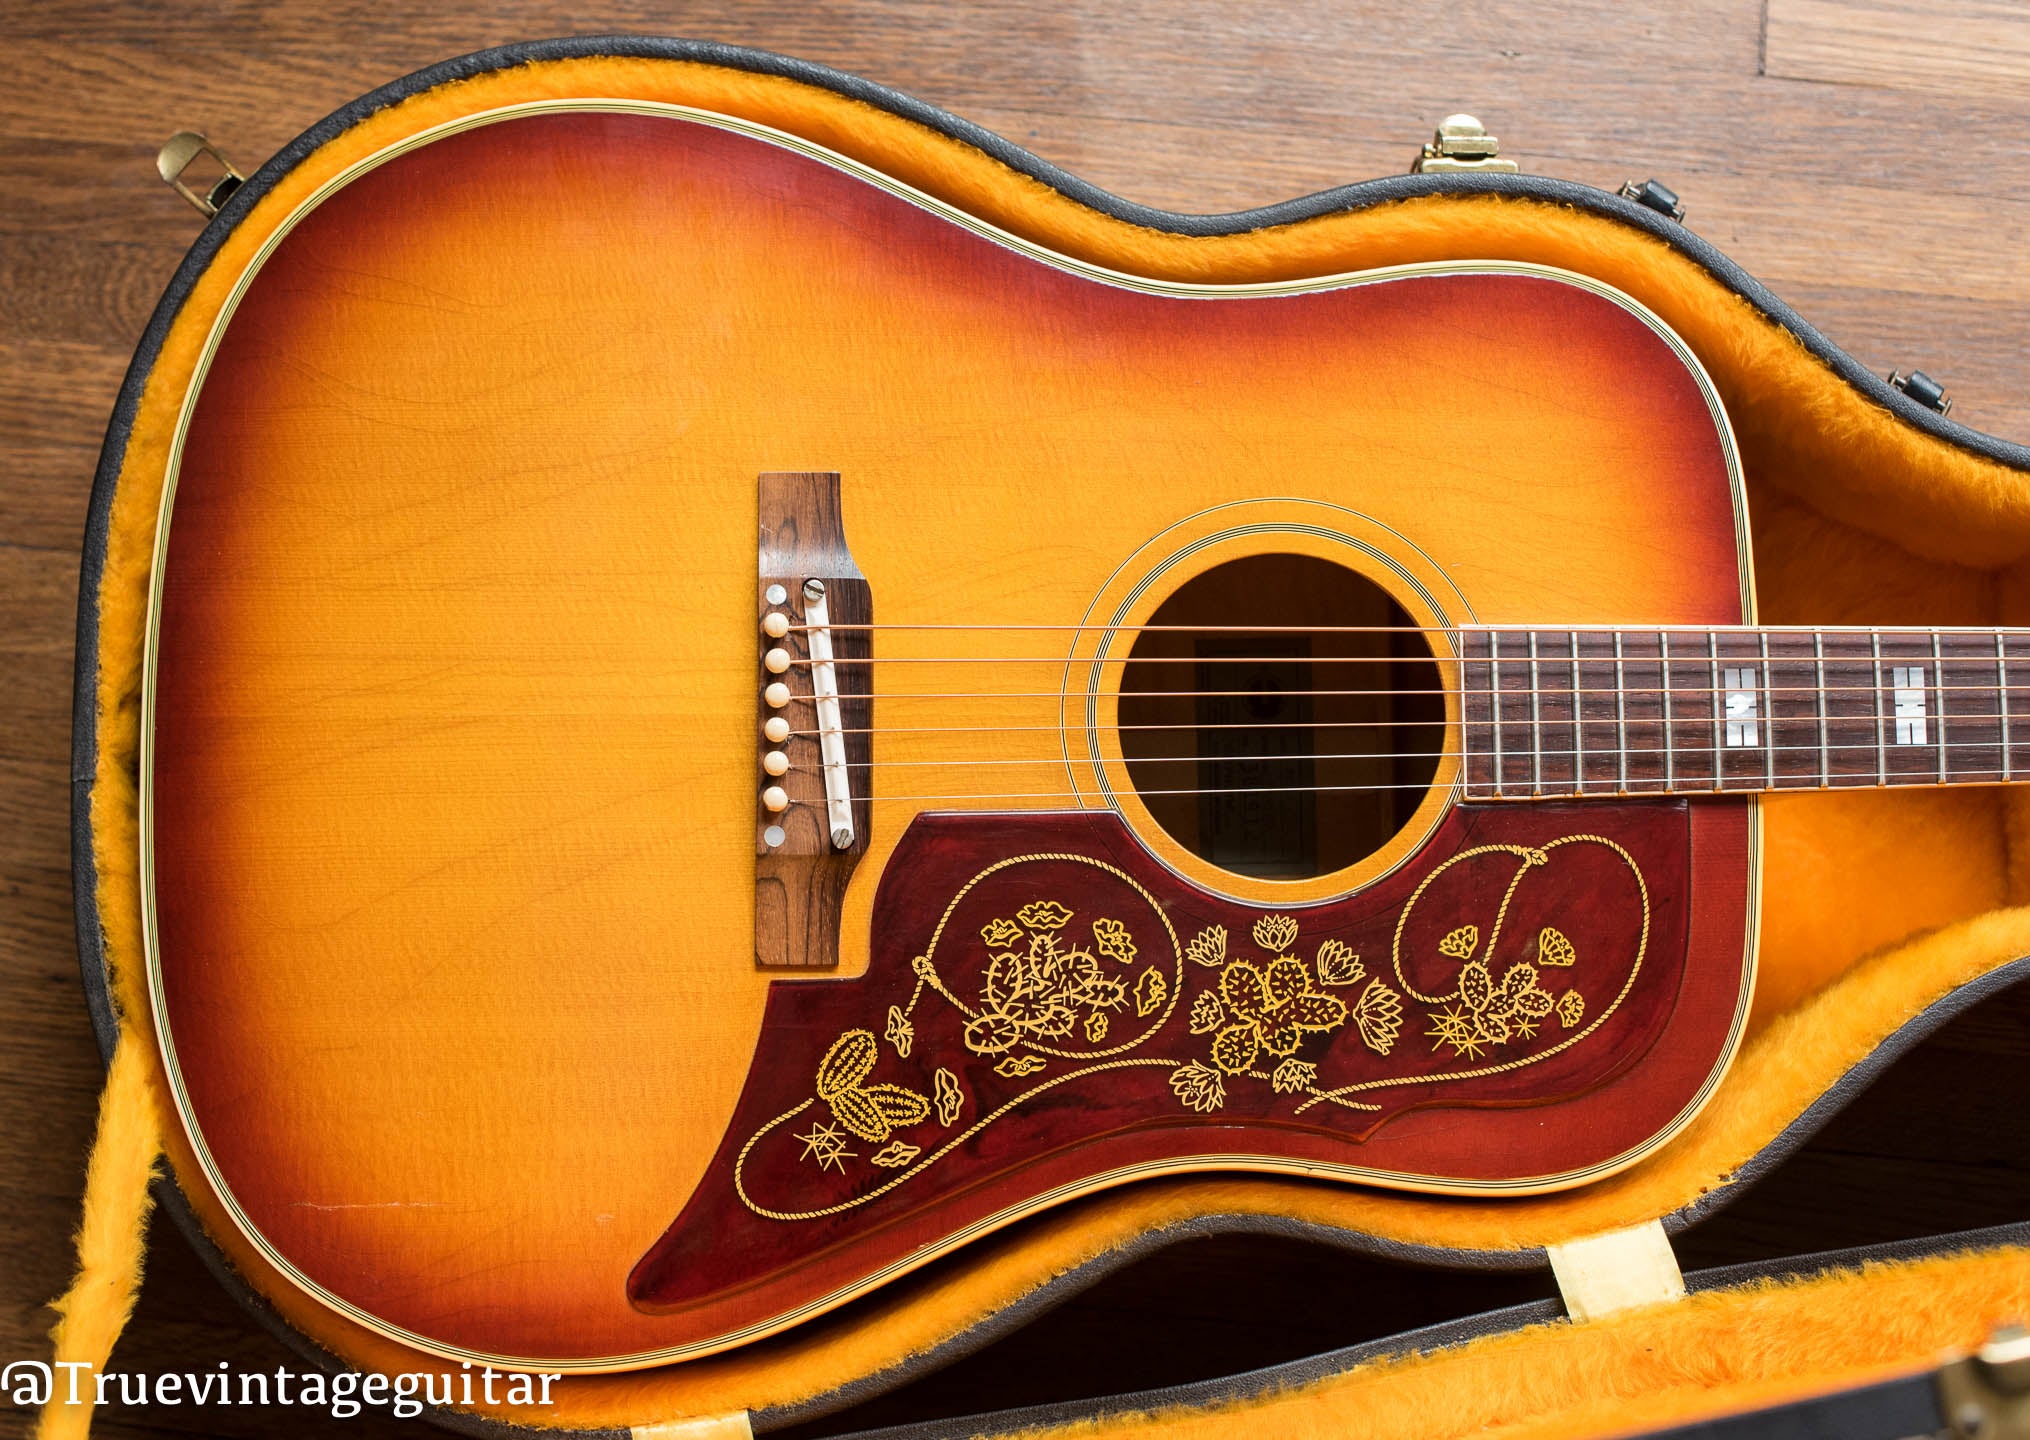 Original case, Vintage 1965 Epiphone FT-110 Frontier acoustic guitar